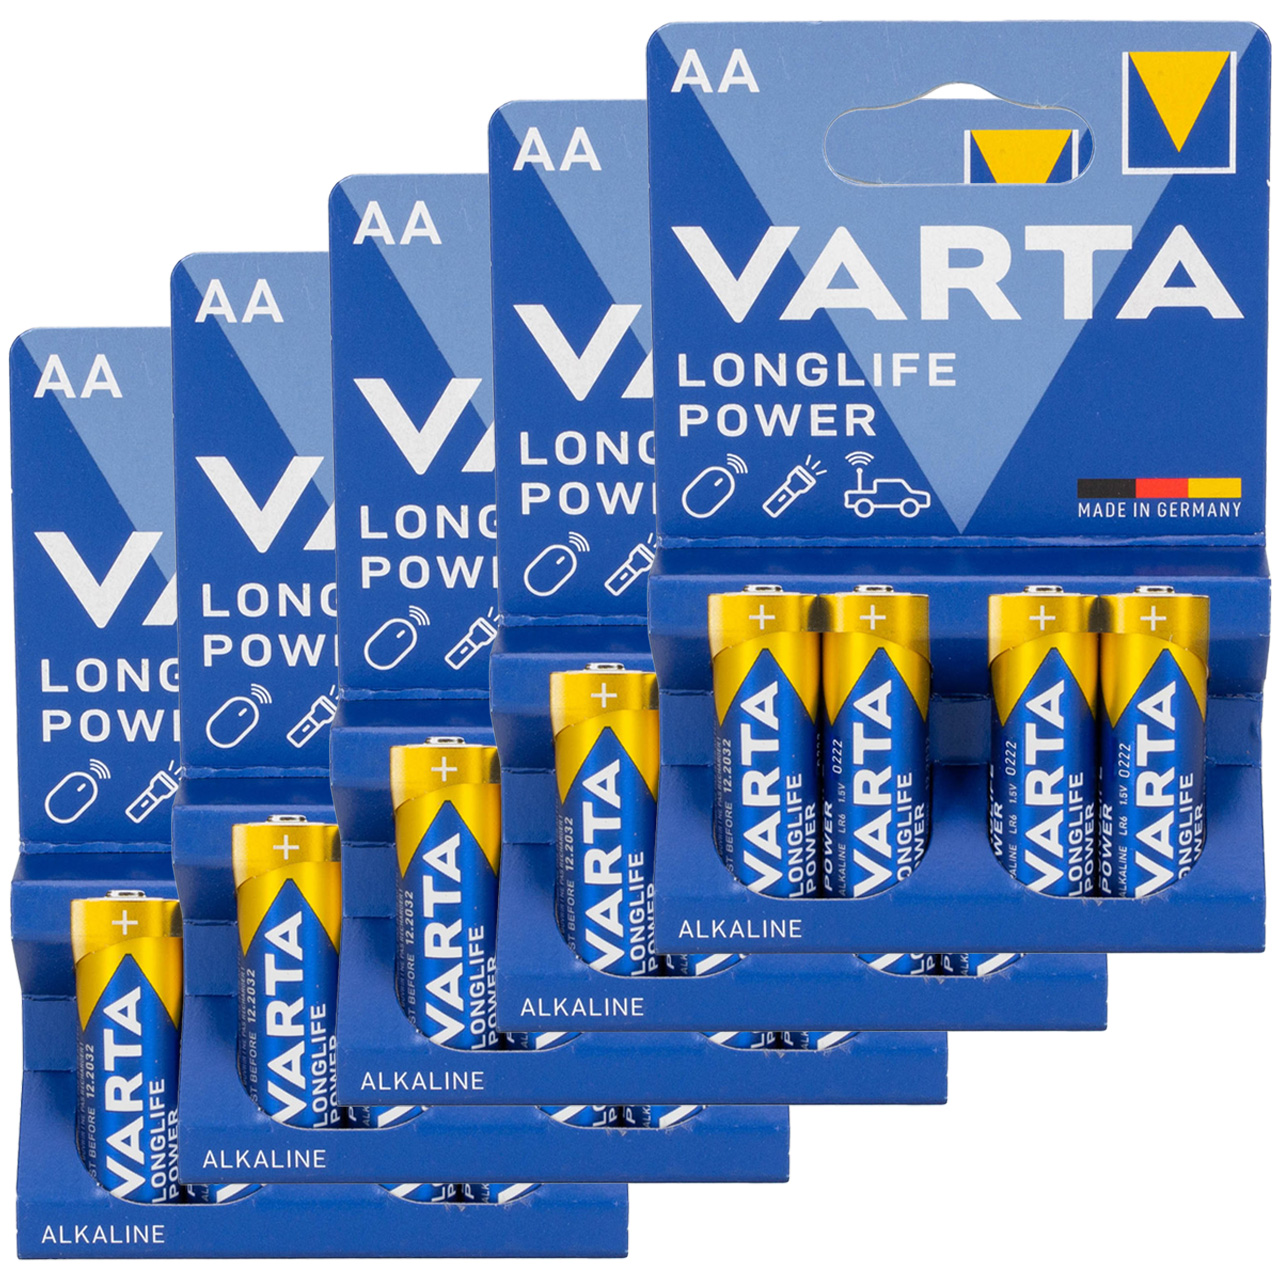 20x VARTA LONGLIFE POWER ALKALINE Batterie AA MIGNON 4906 LR6 MN1500 1,5V